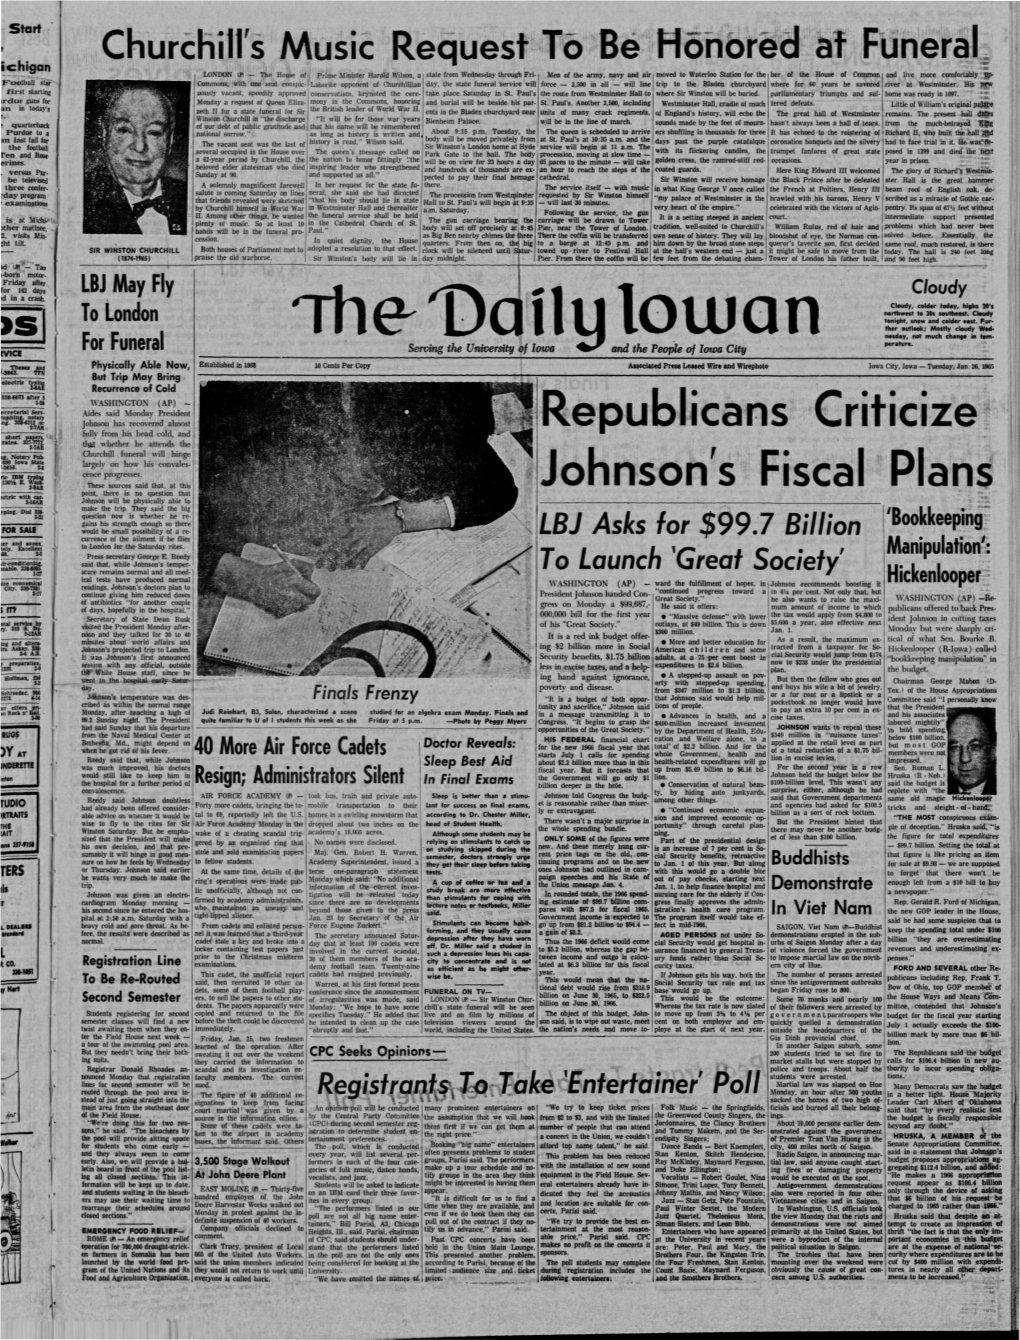 Daily Iowan (Iowa City, Iowa), 1965-01-26